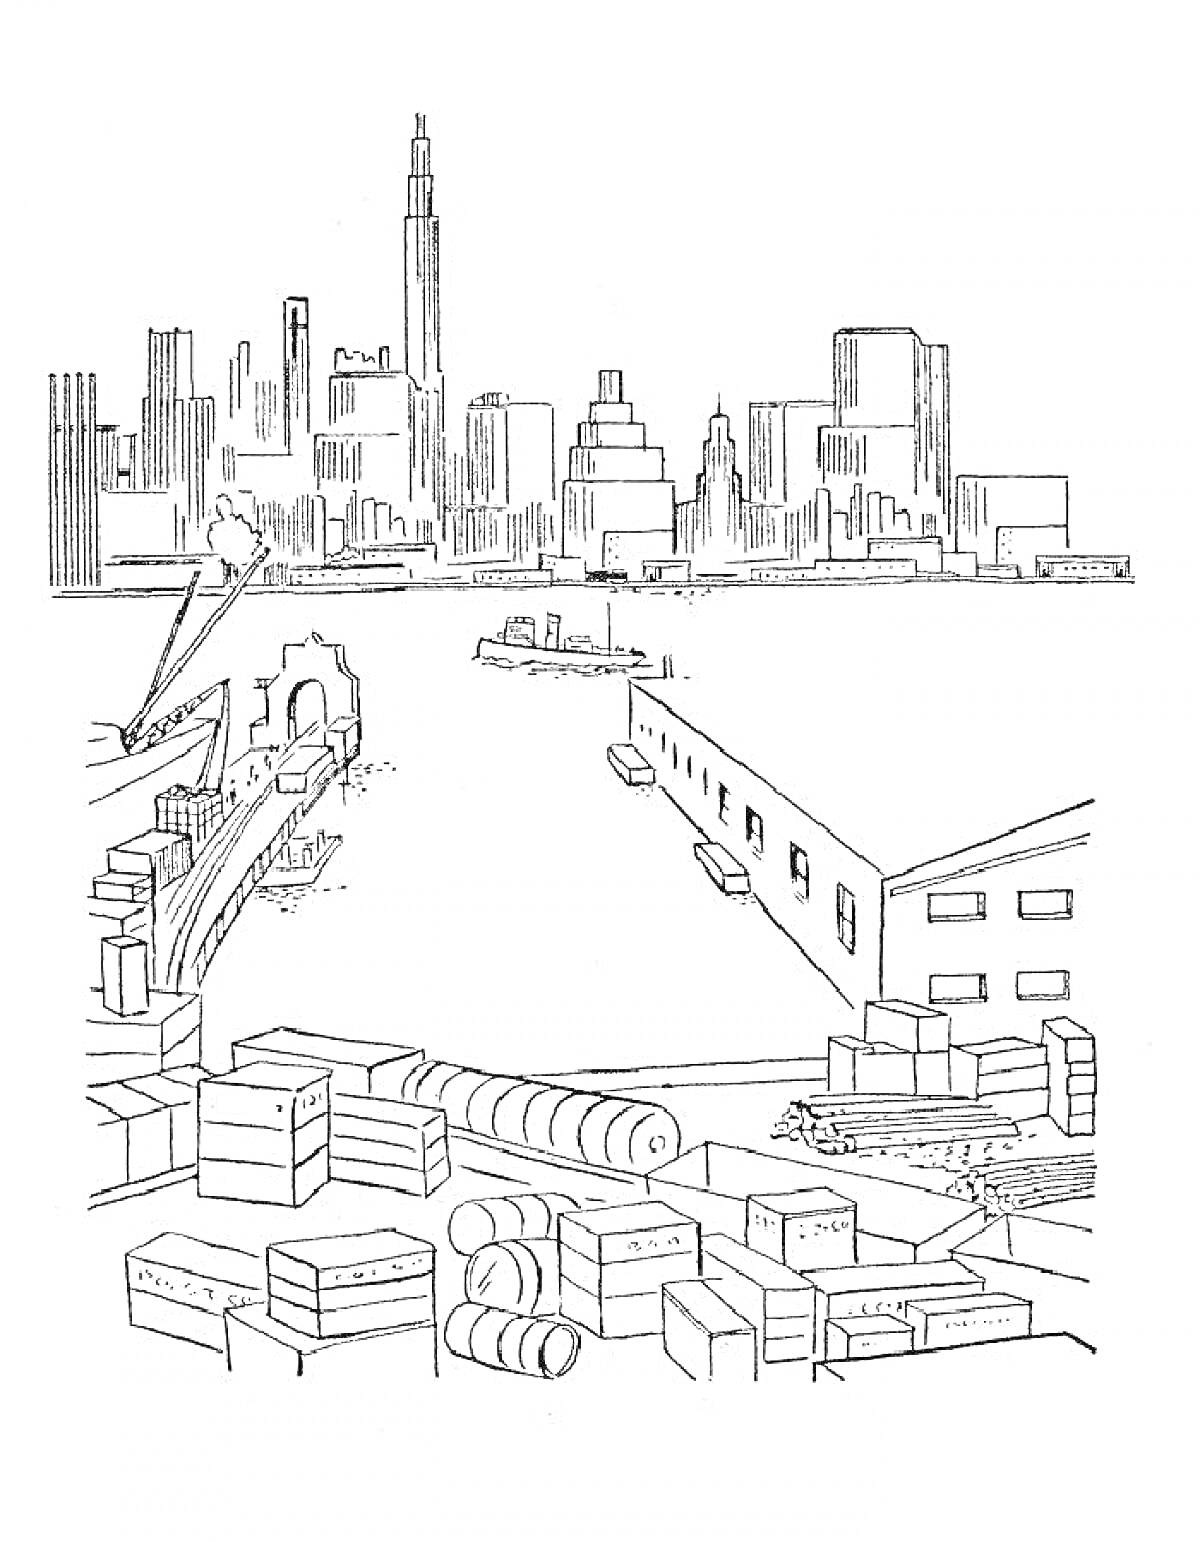 Раскраска Город будущего с небоскребами, рекой с лодками, грузовыми контейнерами и складскими помещениями